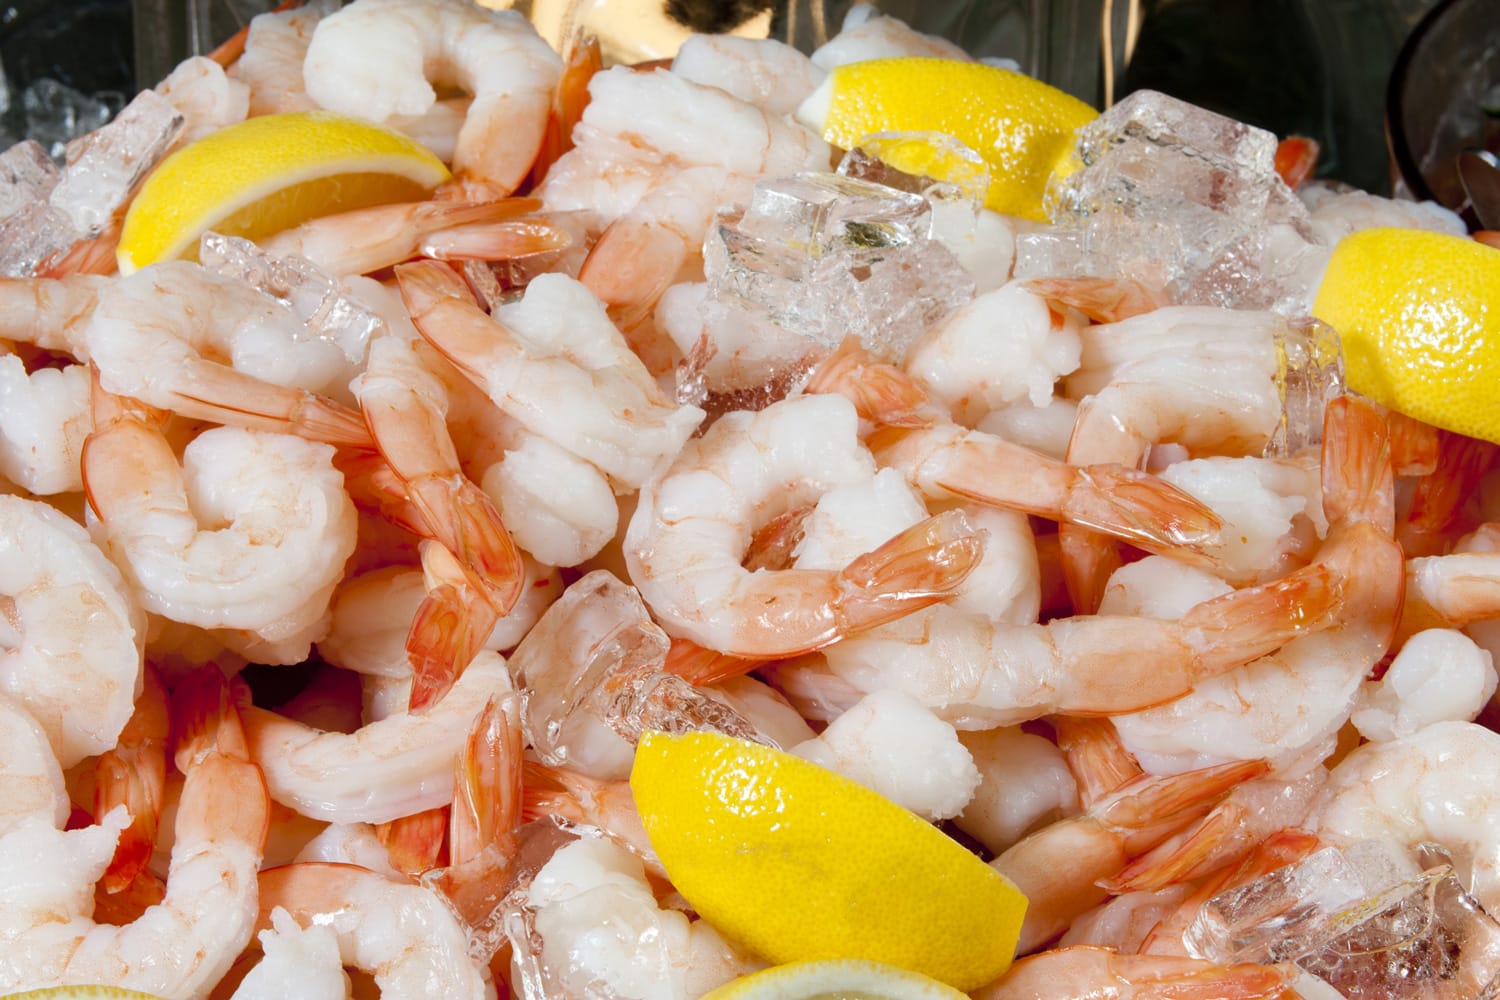 Large pile of fresh shrimp on ice, garnished with sliced lemons